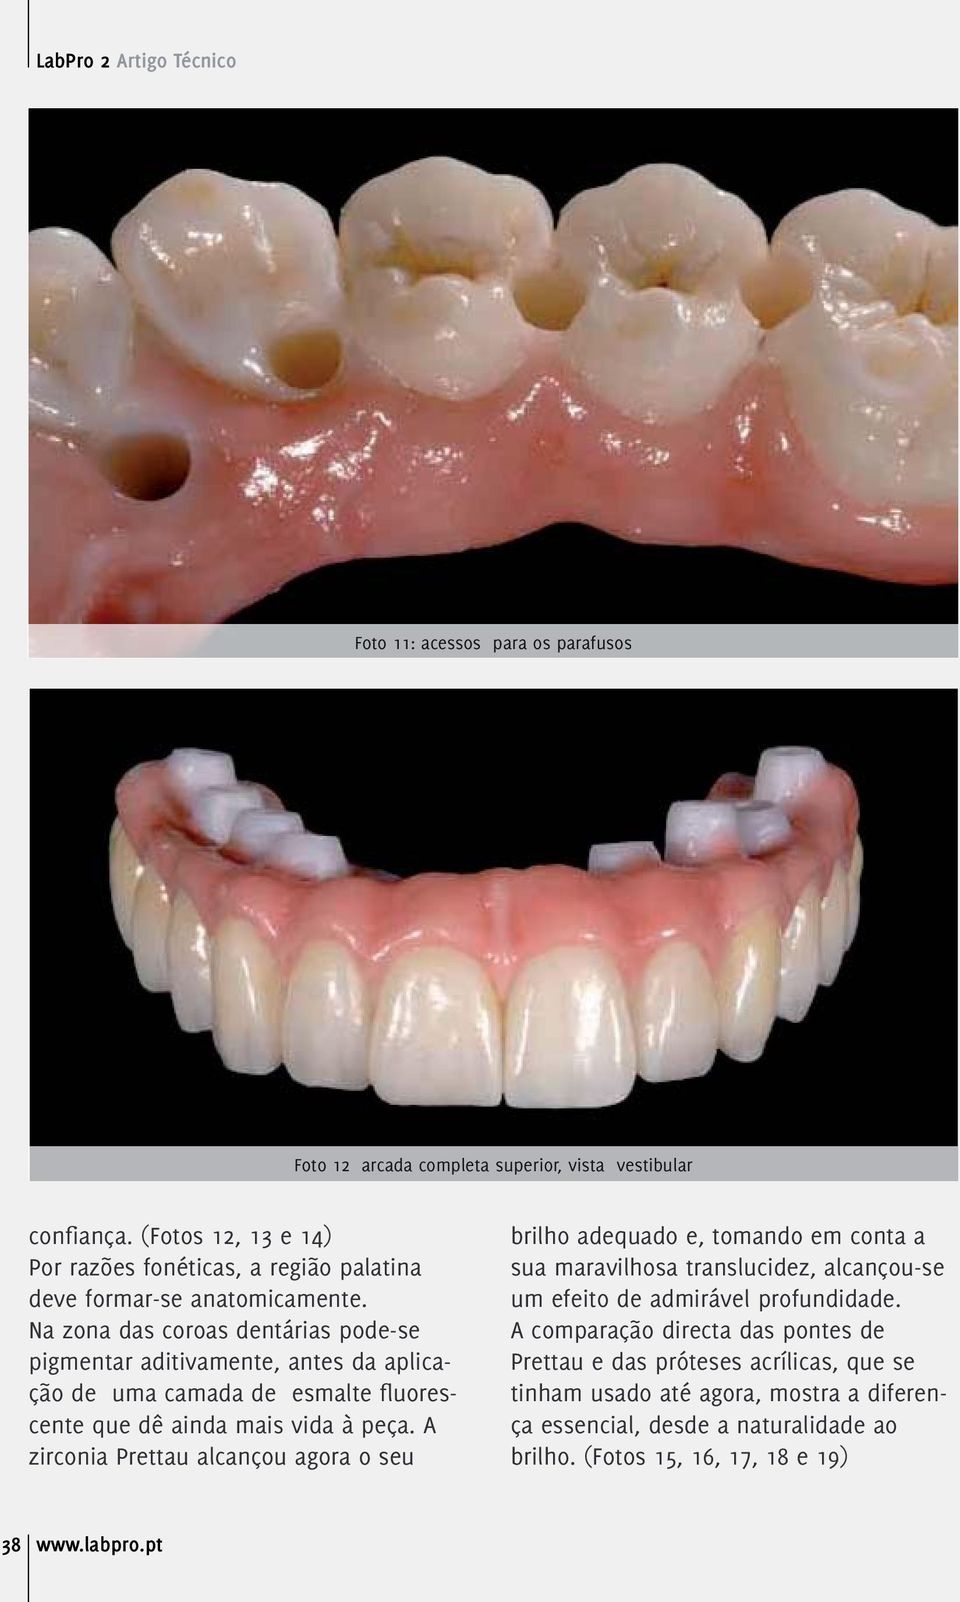 Na zona das coroas dentárias pode-se pigmentar aditivamente, antes da aplicação de uma camada de esmalte fluorescente que dê ainda mais vida à peça.